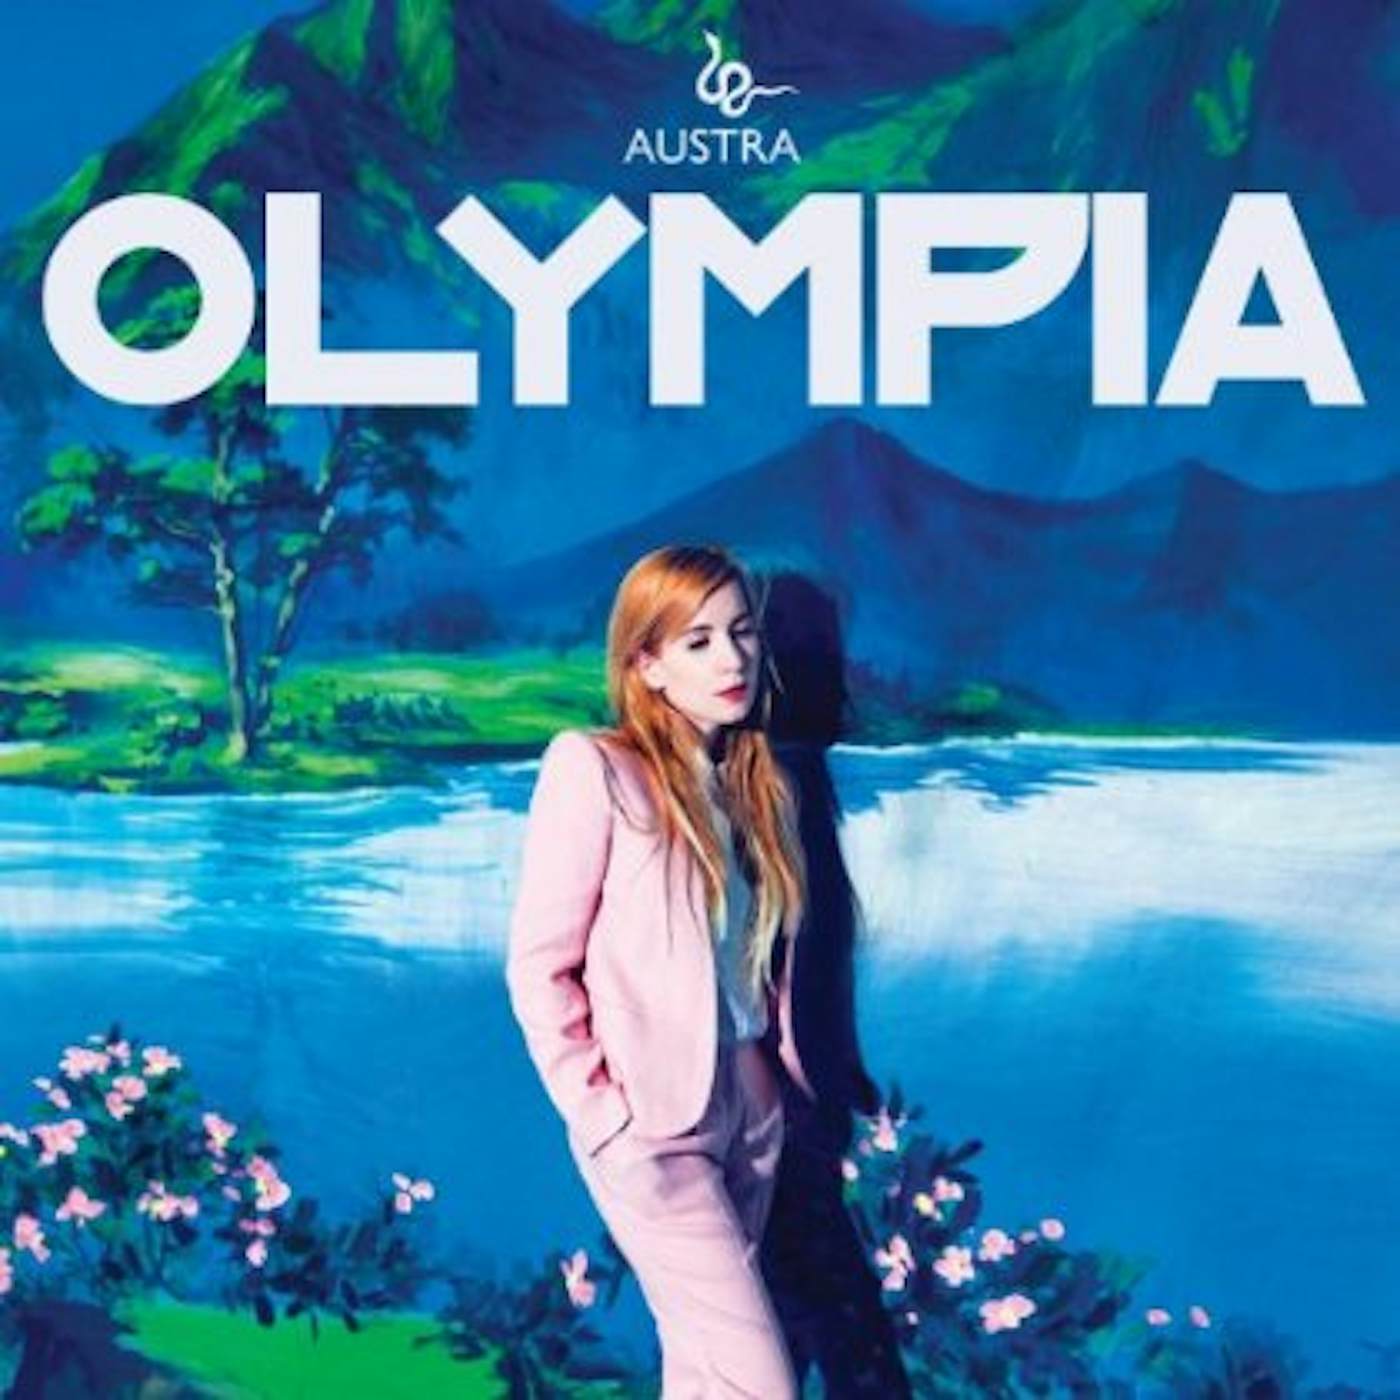 Austra OLYMPIA CD